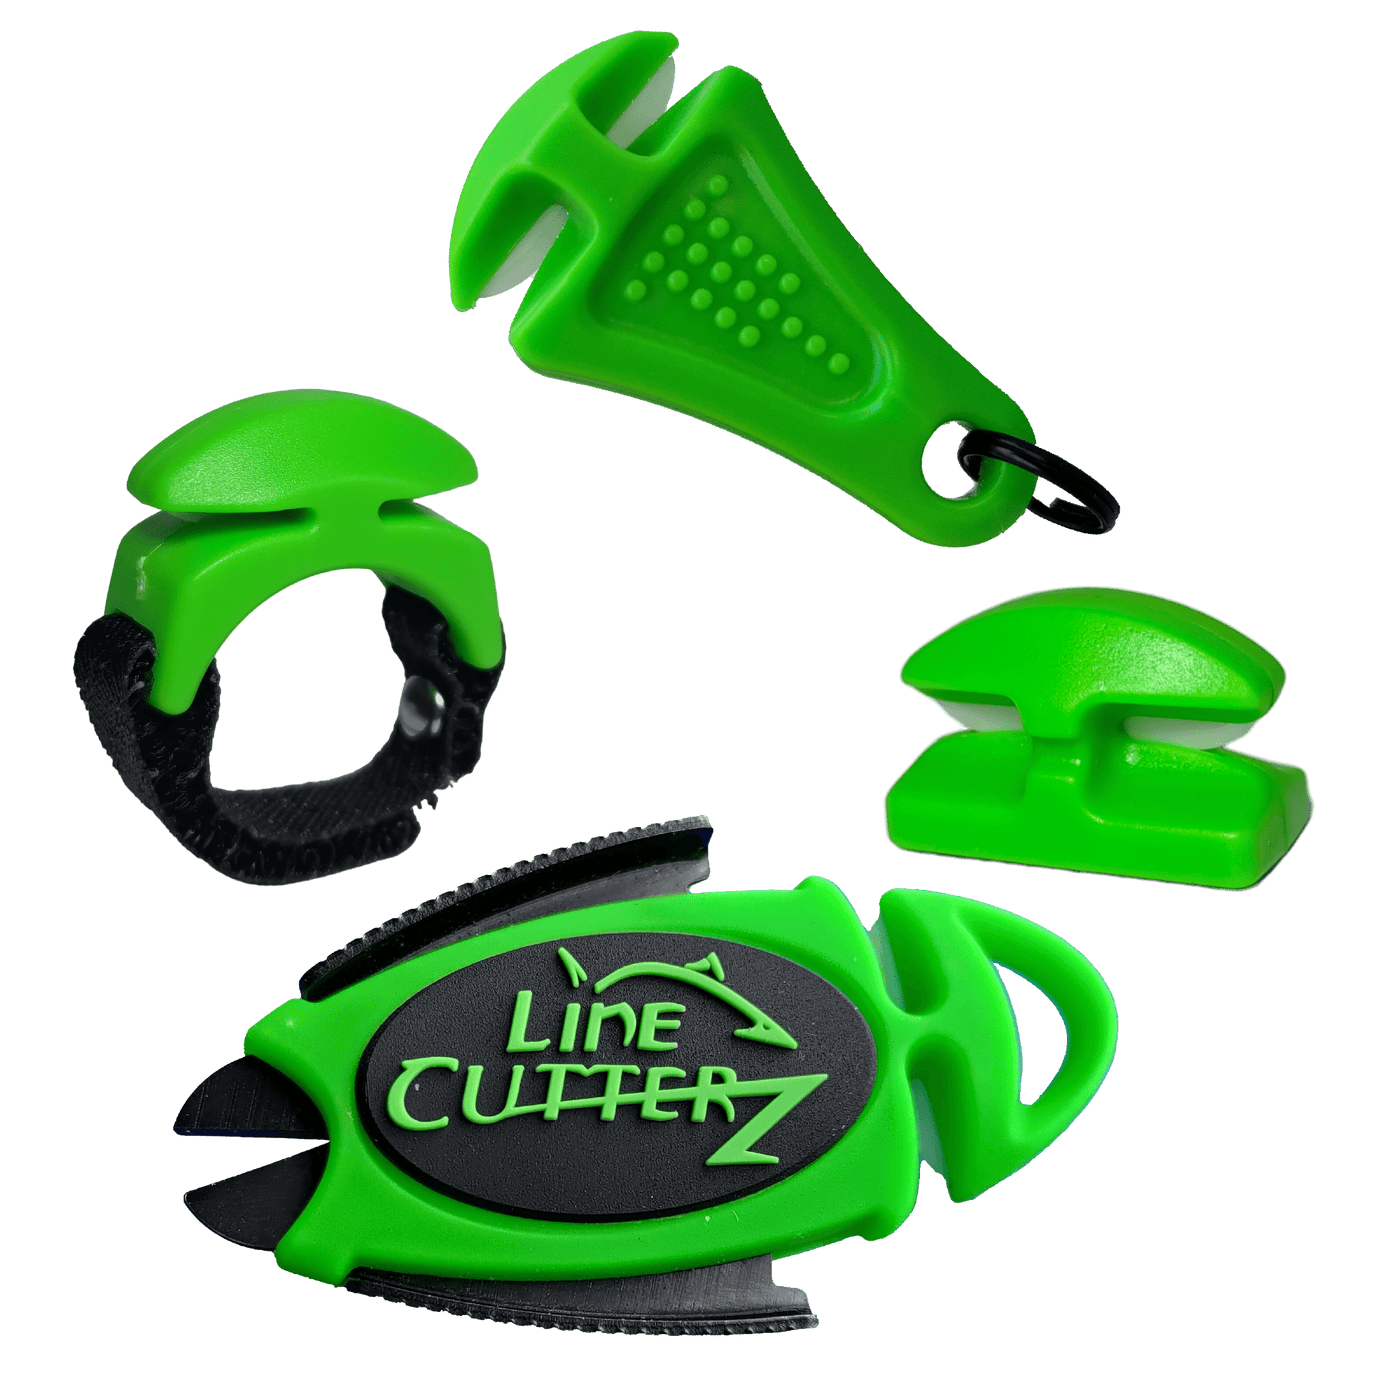 QUADRUPLE PLAY Combo Pack Combo Cutter Line Cutterz Green 